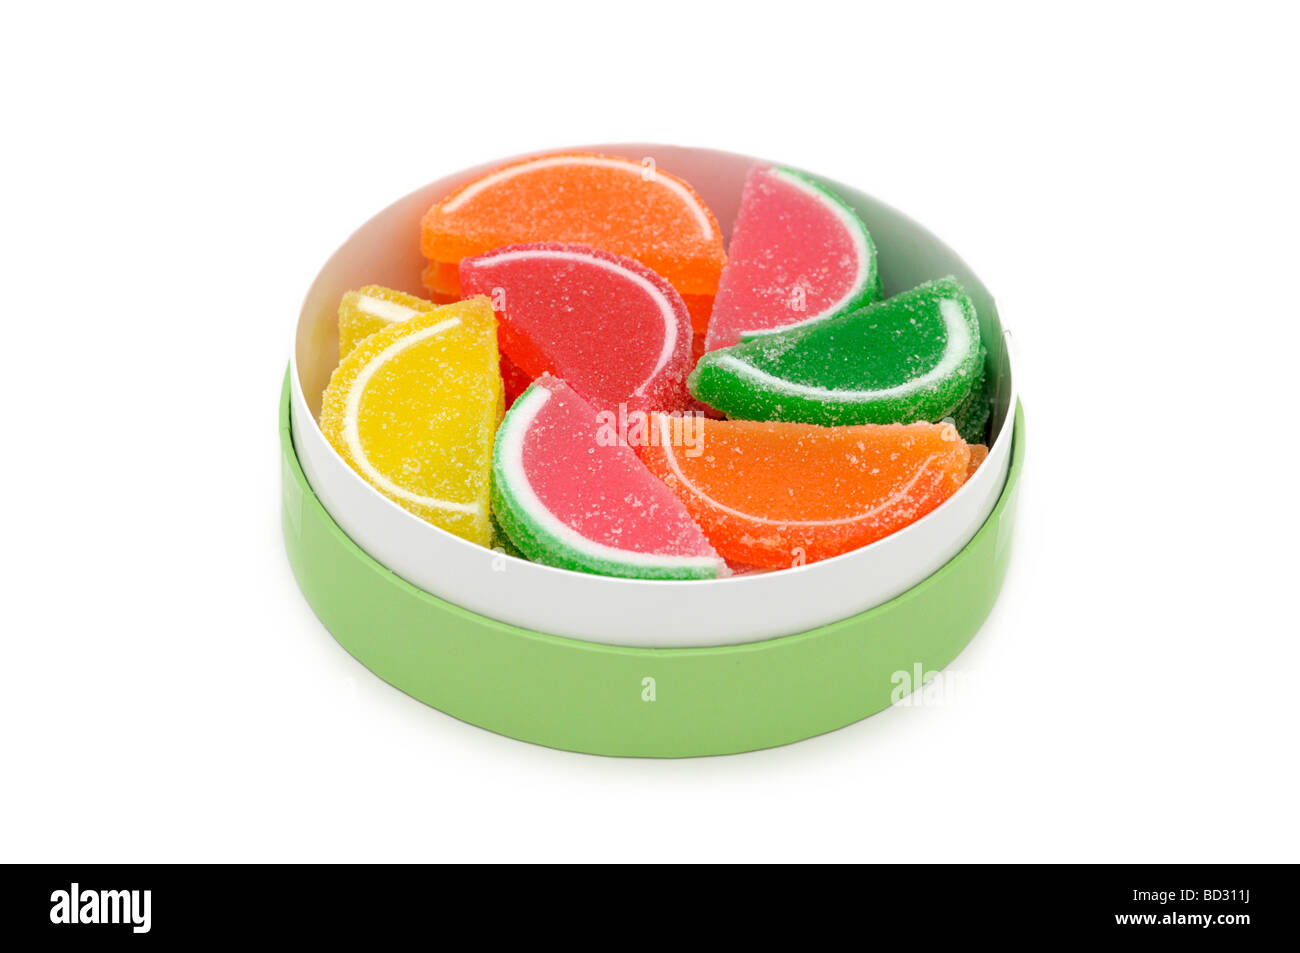 Tranches de fruits gelée dans une boîte / Jelly Sweets, enrobés de sucre Banque D'Images